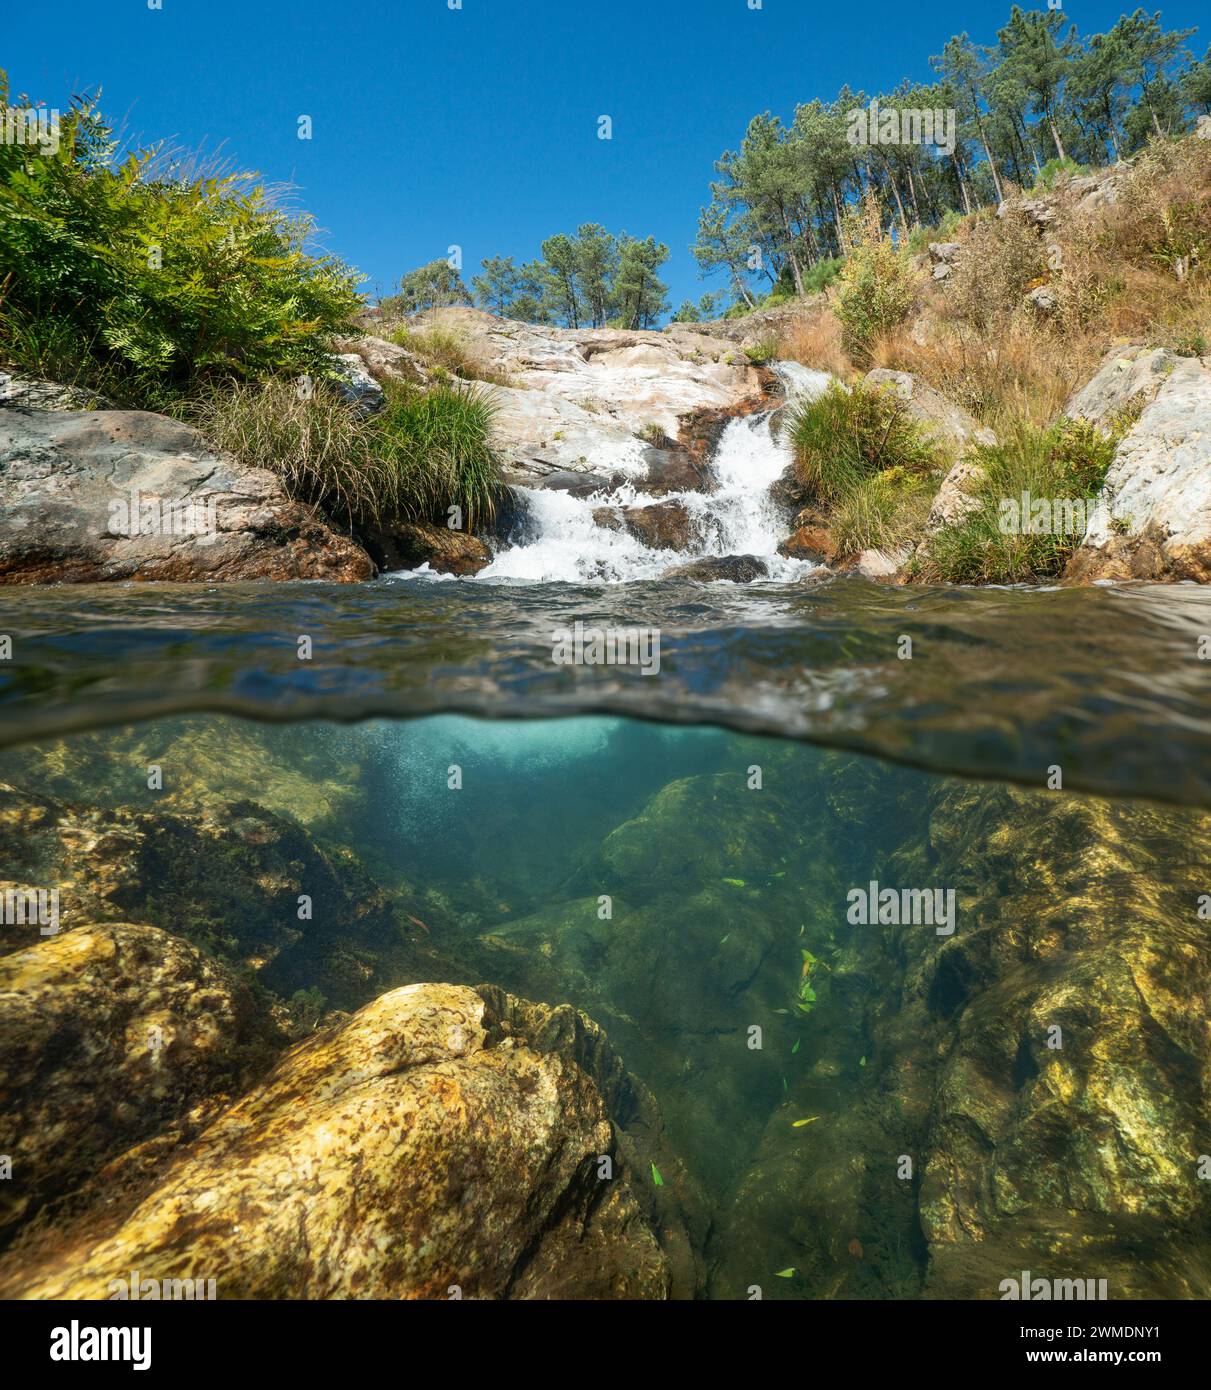 Petite cascade dans une rivière en Espagne, vue divisée à moitié sur et sous la surface de l'eau, scène naturelle, Galice, province de Pontevedra Banque D'Images